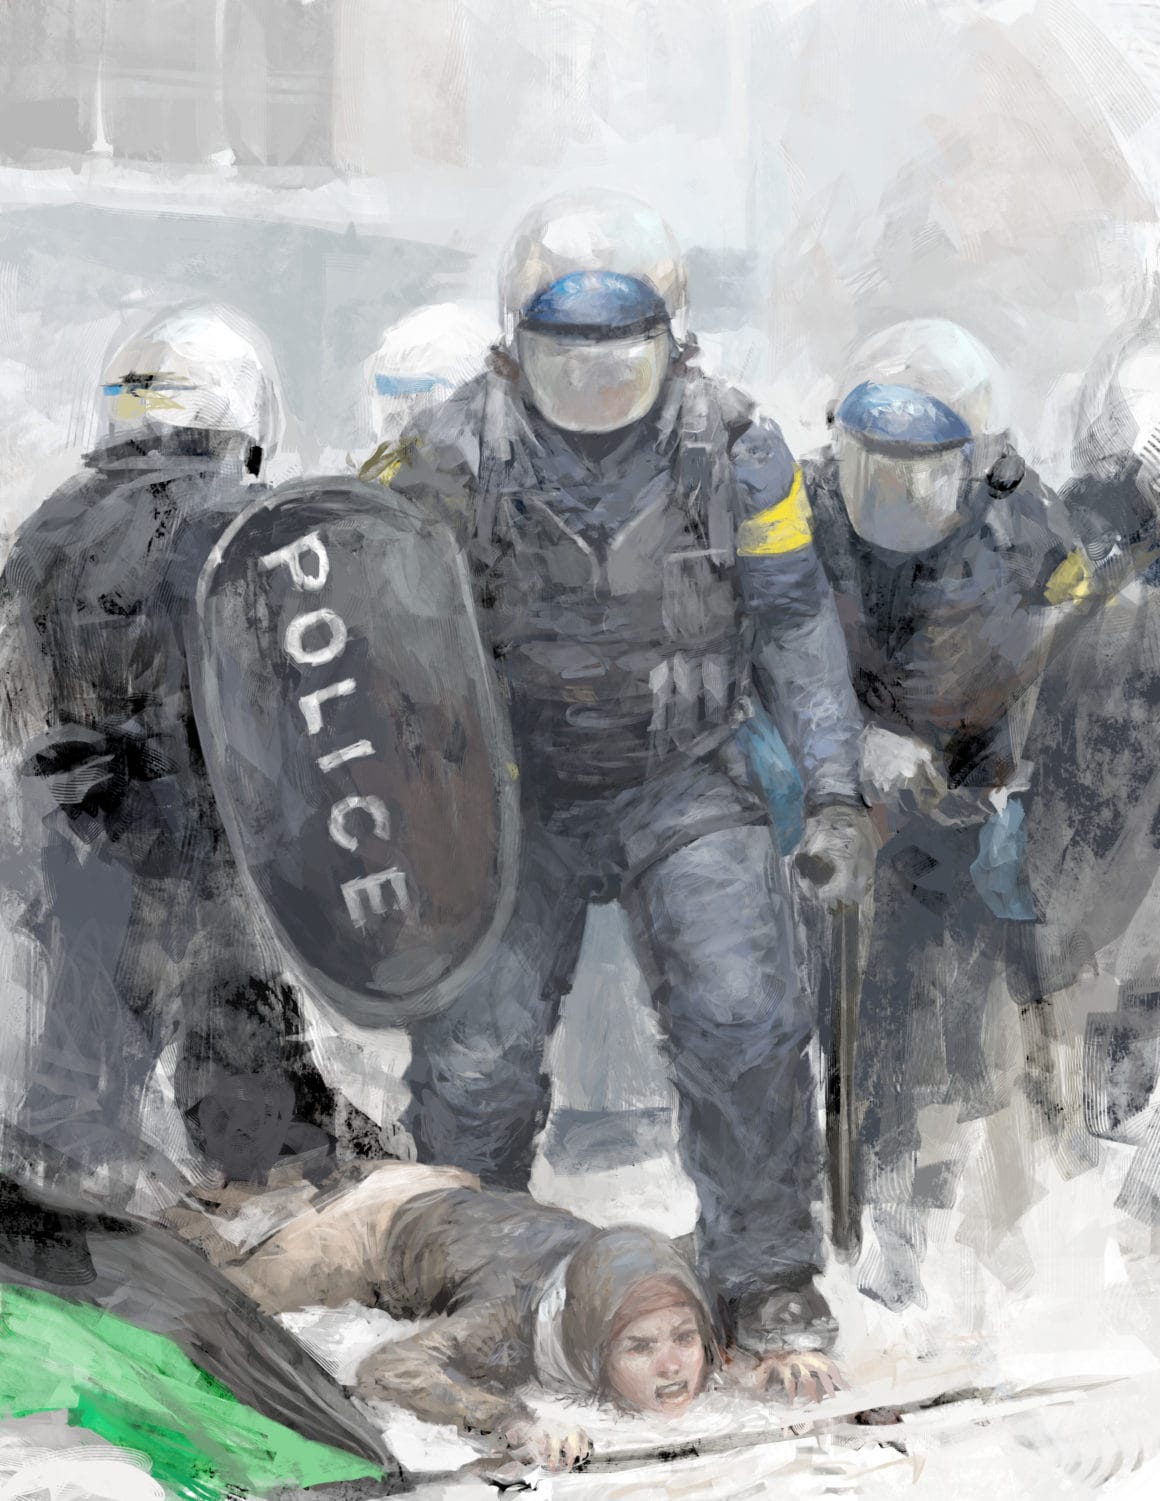 "Bouge" est une œuvre engagée dénonçant la répression policière par l'artiste québécois ArtAct